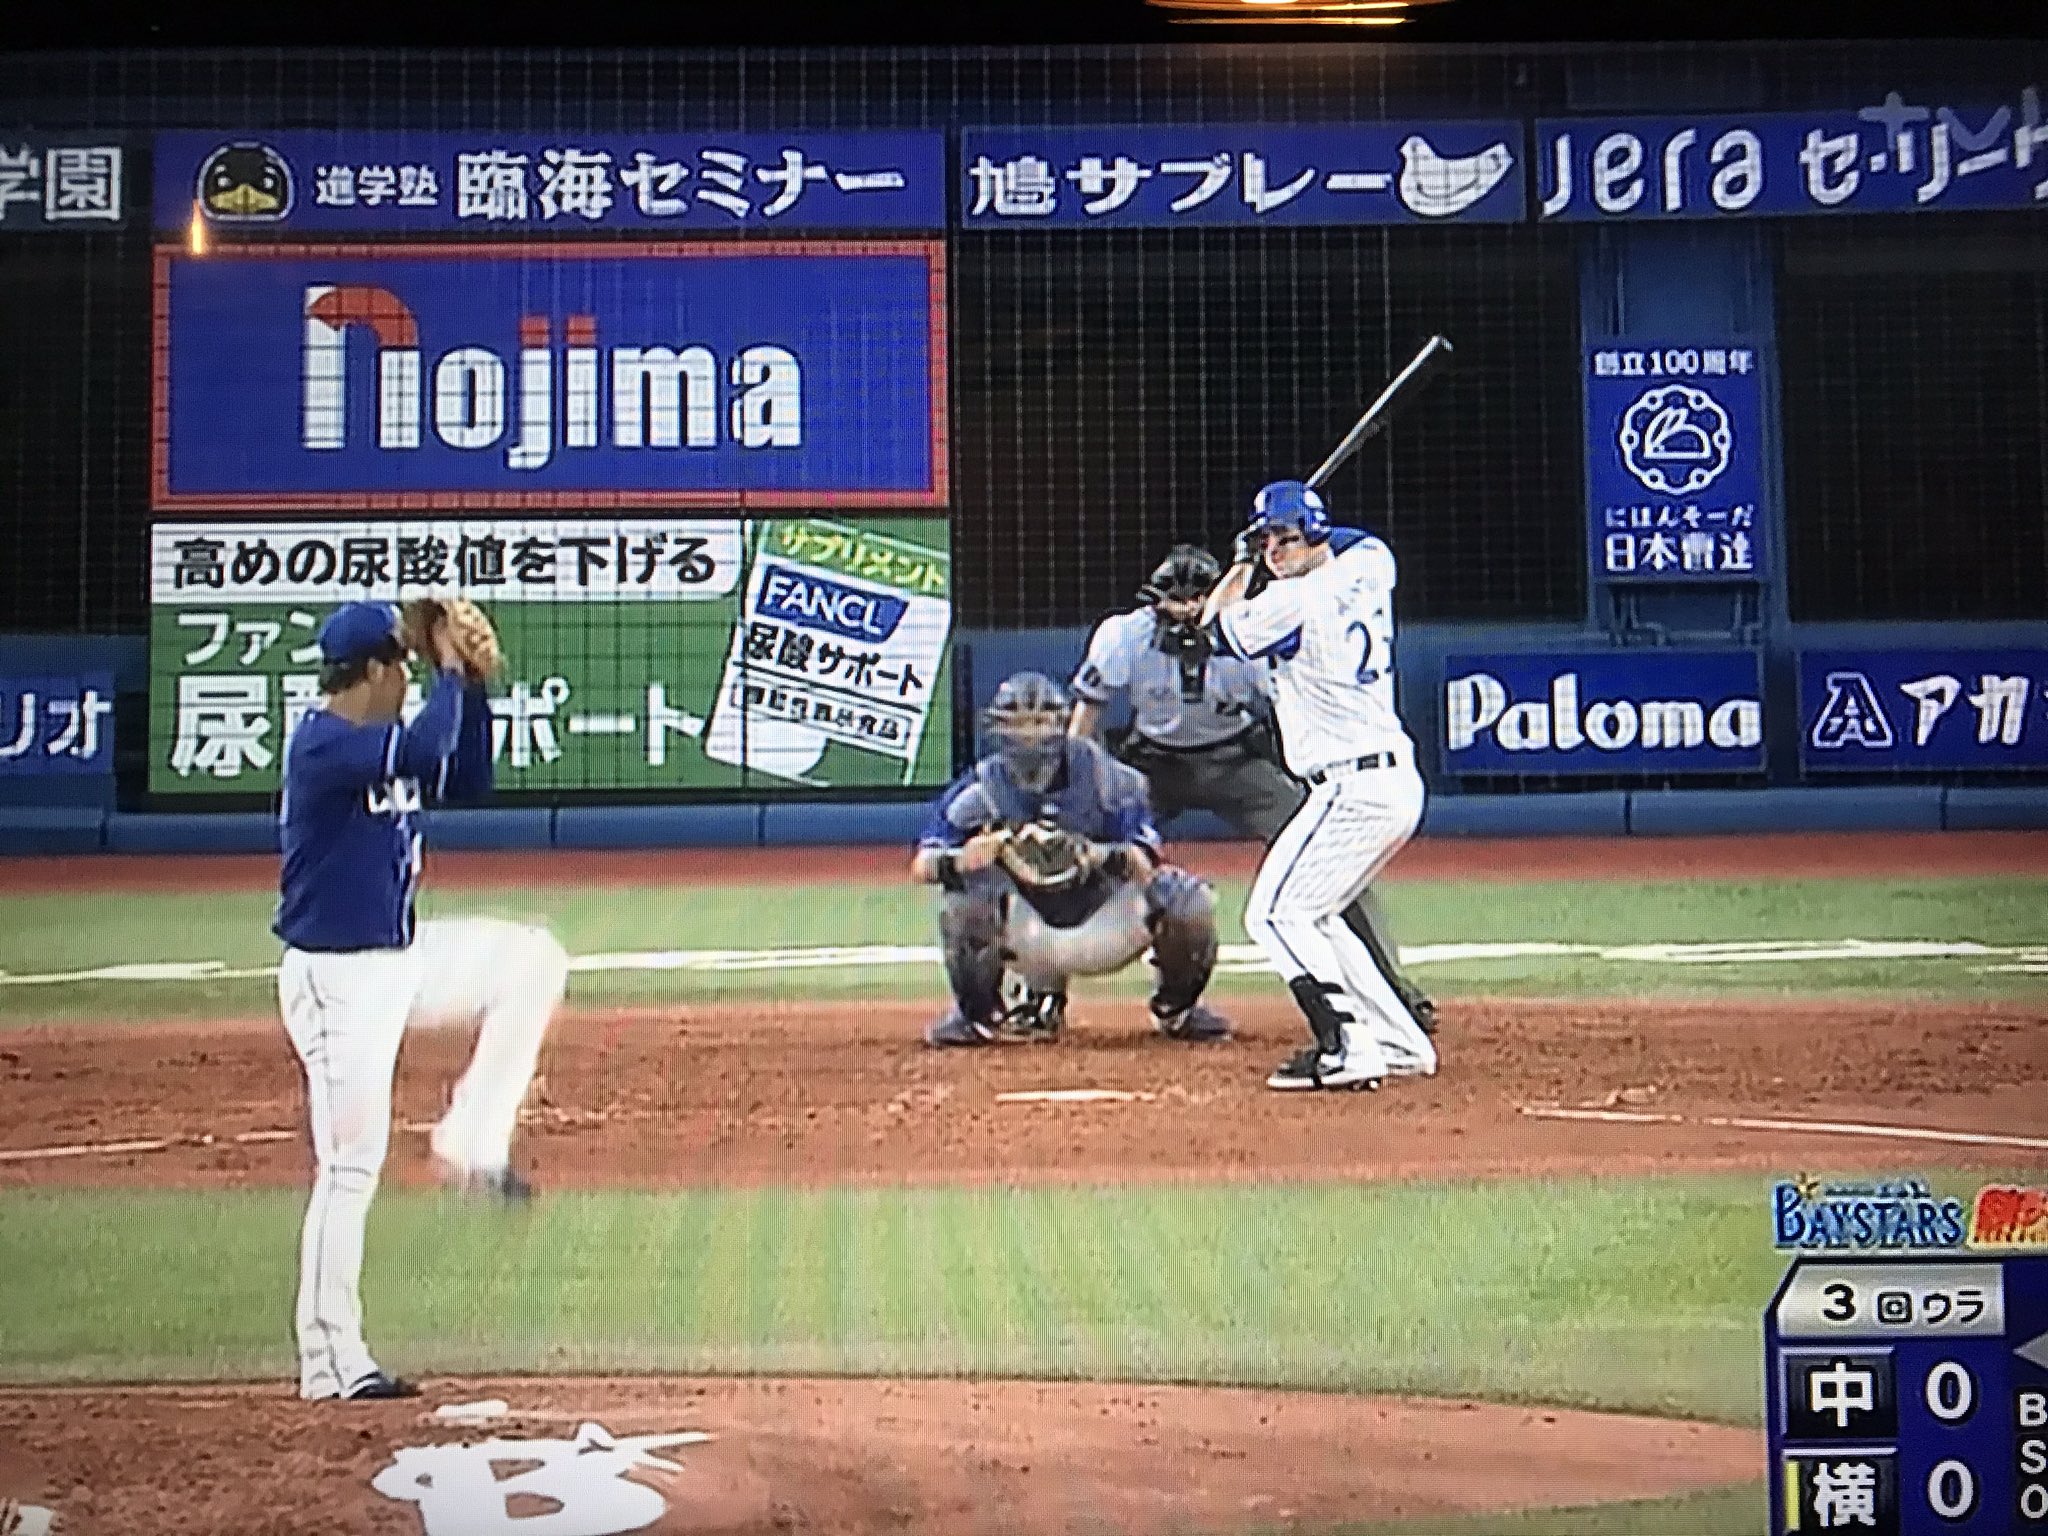 アフロヒト Lohitoishikawa 今シーズン初テレビで試合 オースティン かっこいいなあ やはりメジャーリーガーらしい華がある 今年野球を見てて一番ワクワクする選手だ Dena オースティン T Co Hoo5epa4bf Twitter